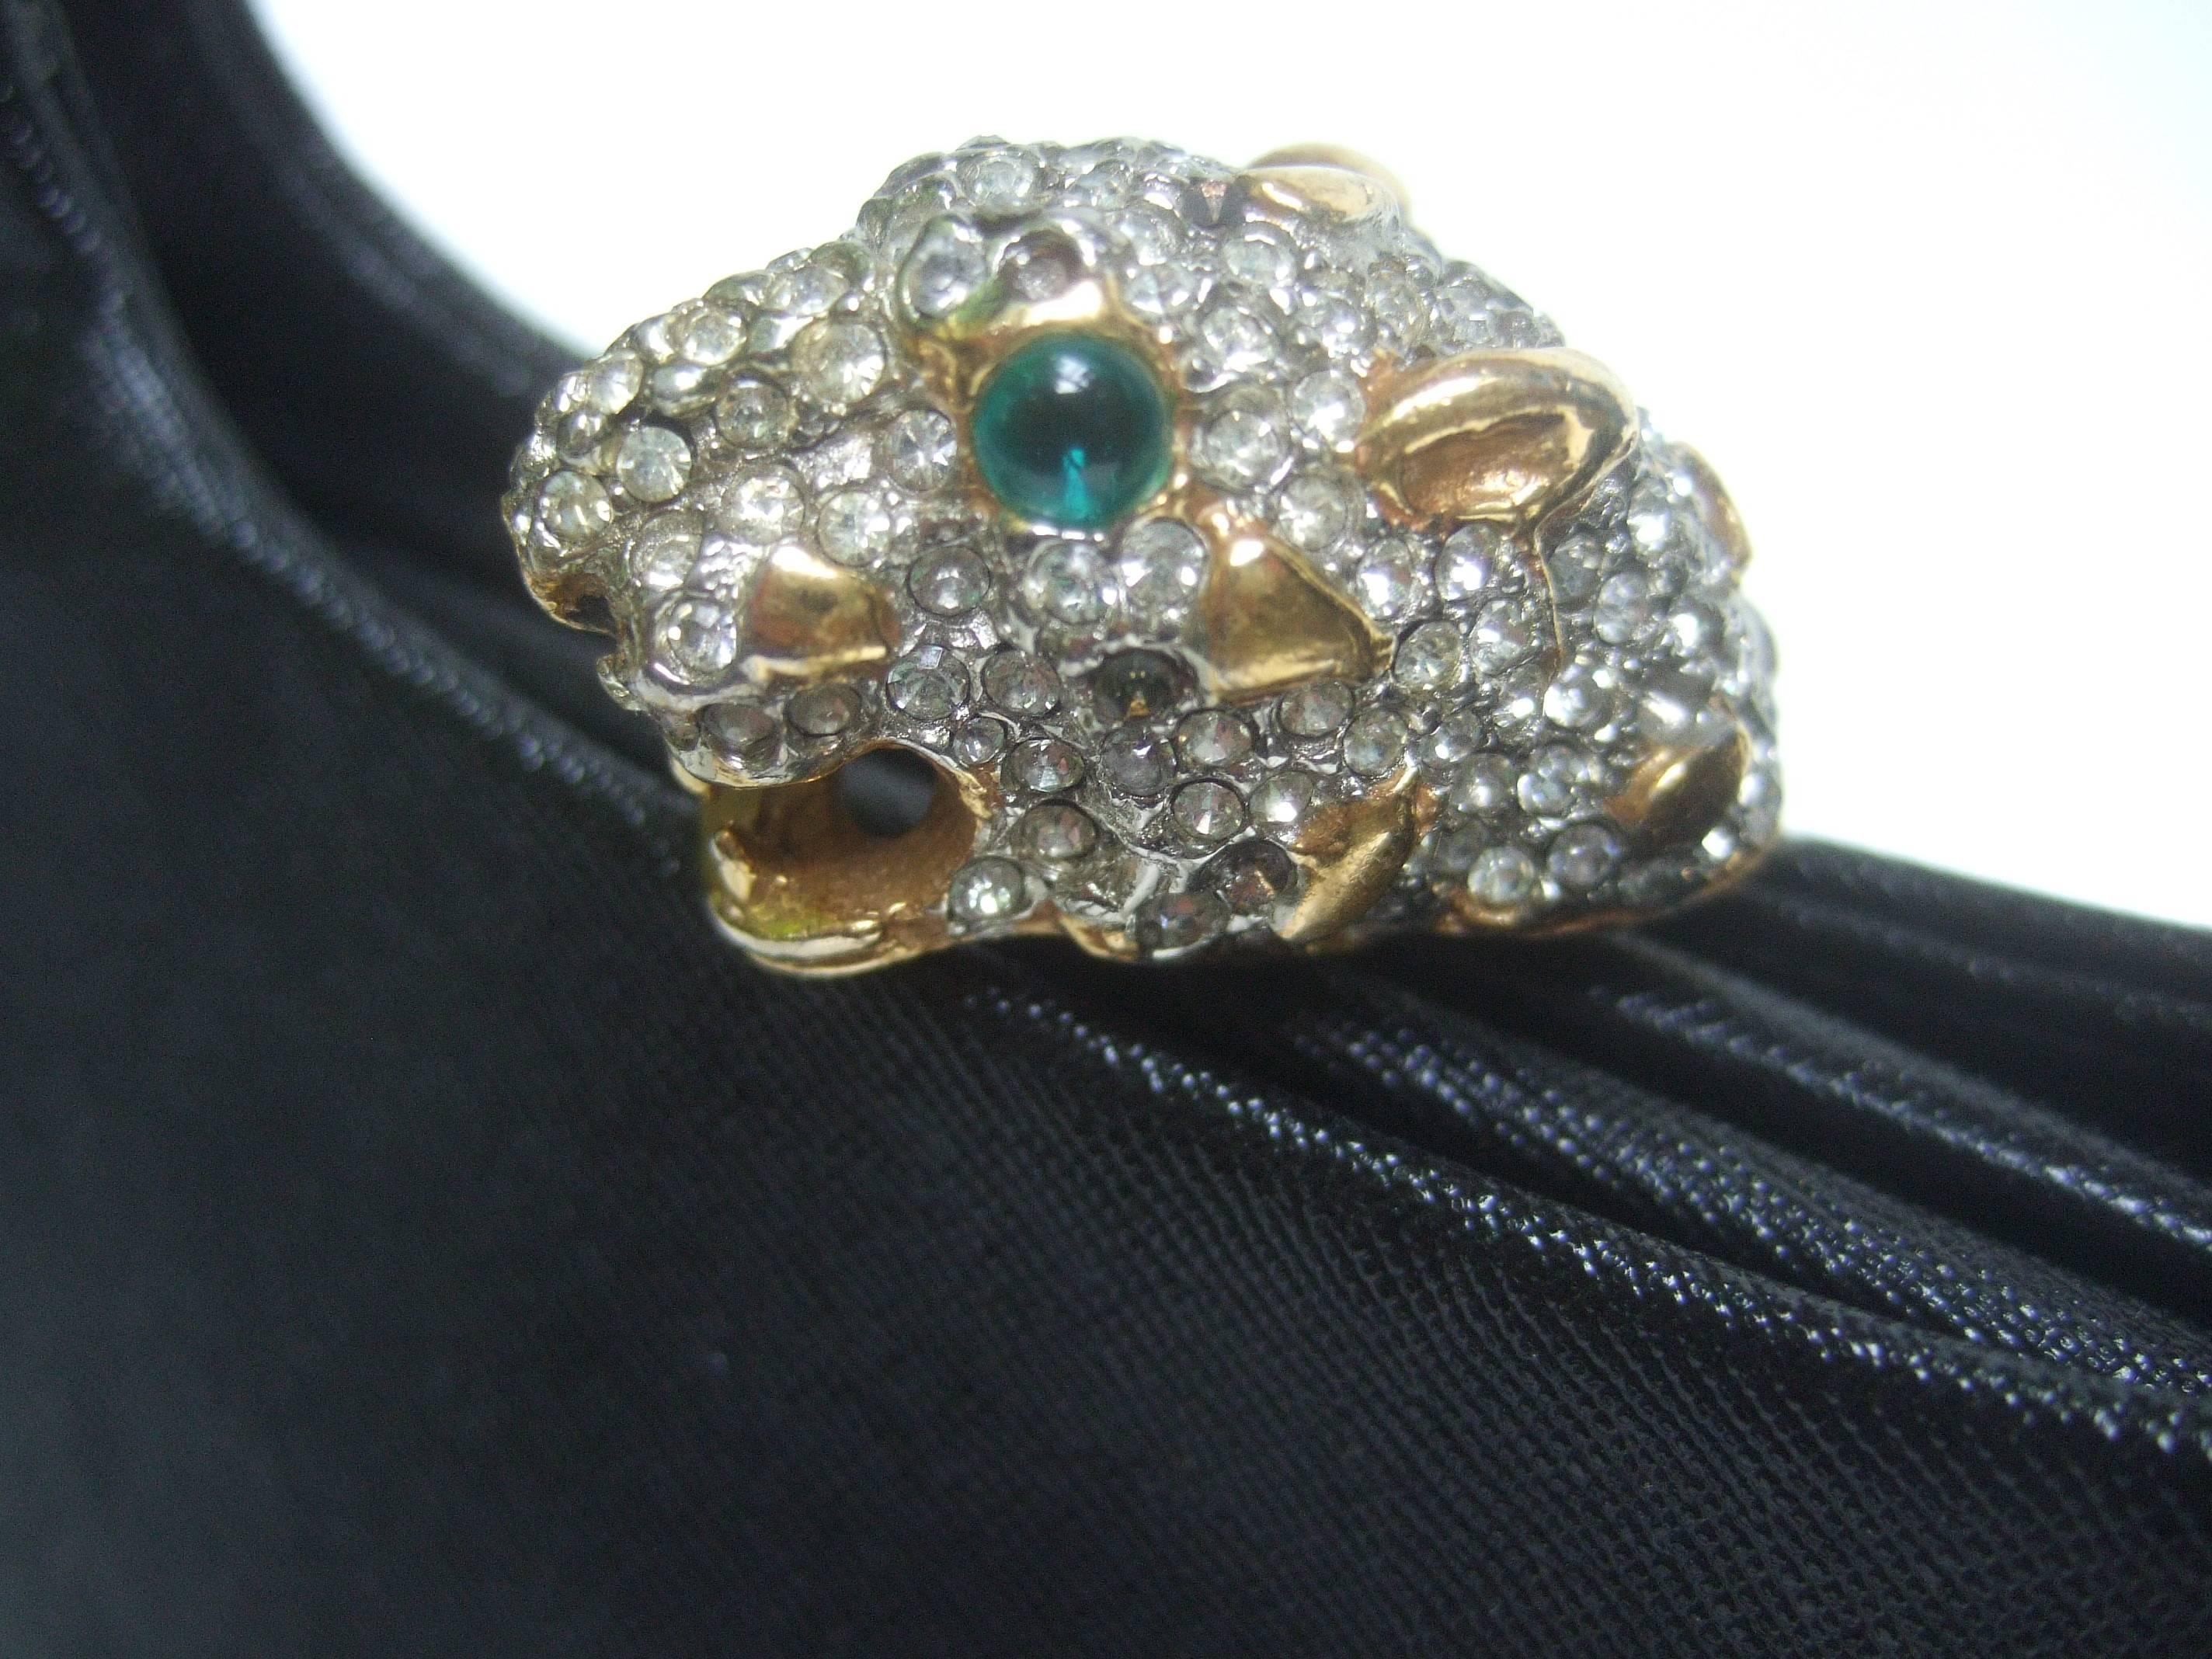 Black Exquisite Kenneth Lane Jeweled Jaguar Clasp Evening Bag for Rosenfeld 